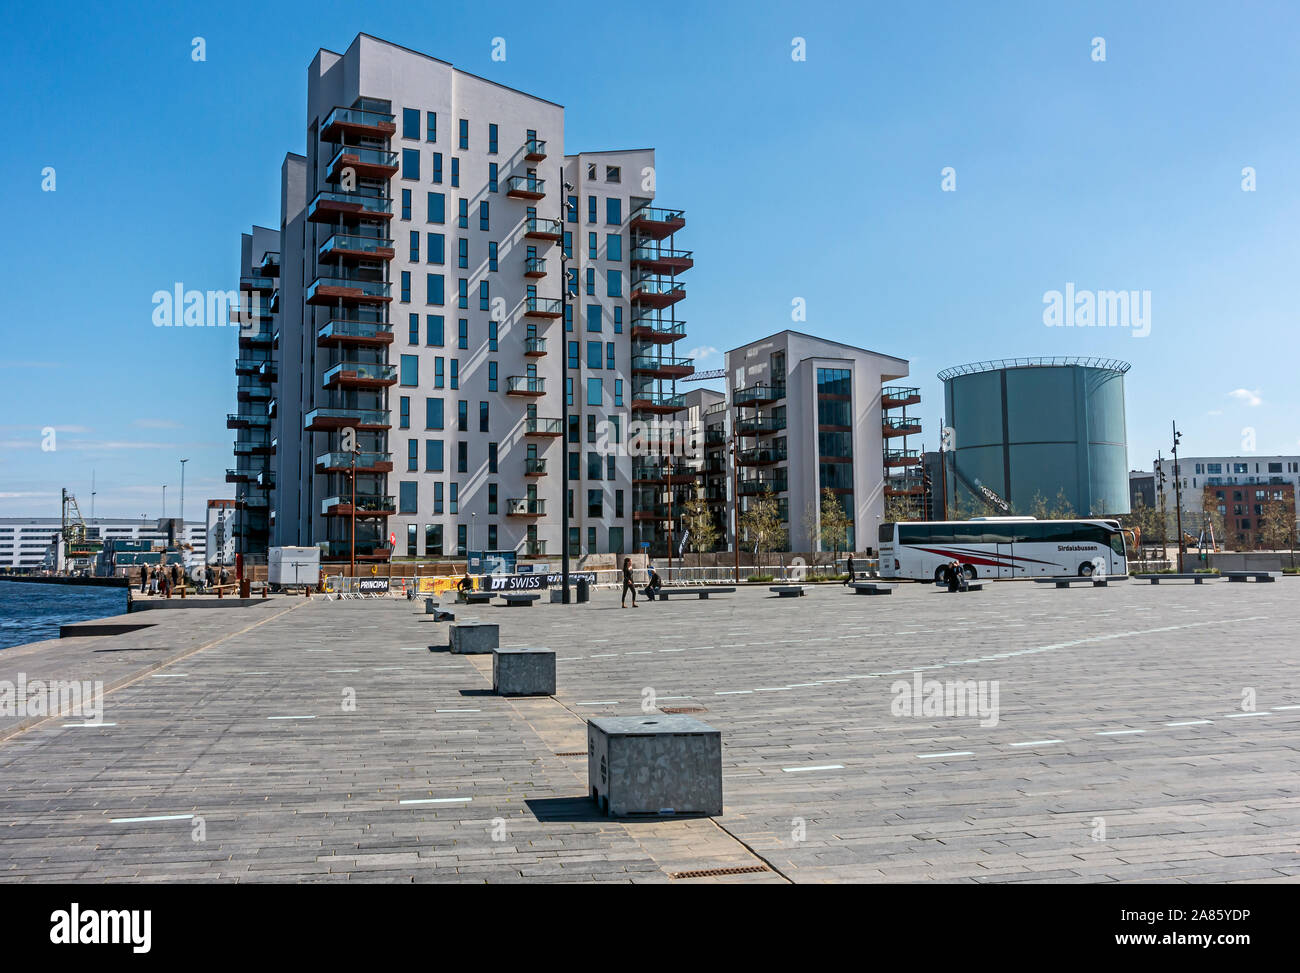 Nouveaux appartements de grande hauteur à Stjernepladsen Østre Havnegade du port dans le Jutland Limfjorden Aalborg Danemark Europe Banque D'Images